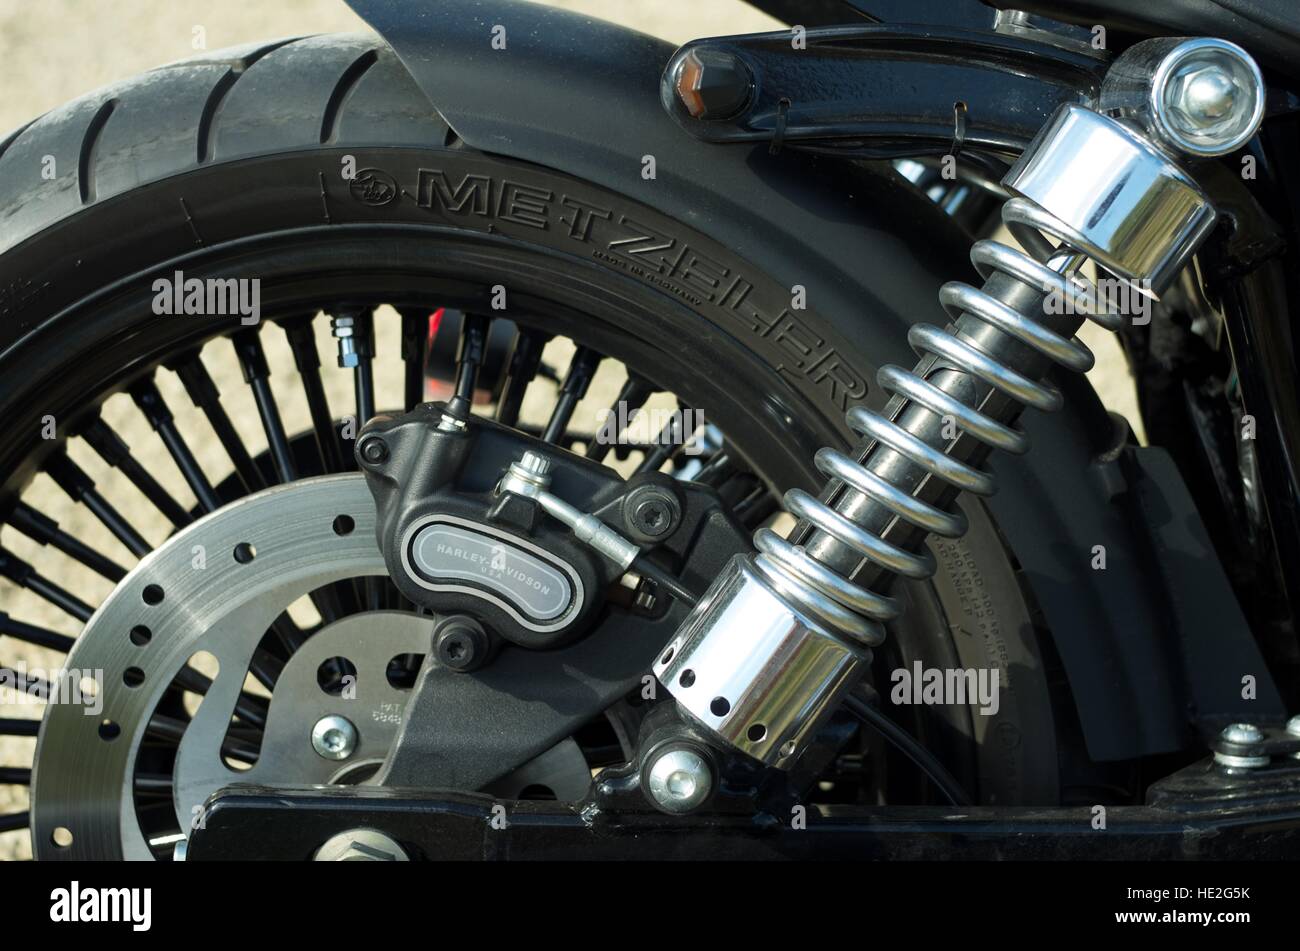 Stoßdämpfer hinten von einer Harley Davidson Motorrad Stockfotografie -  Alamy